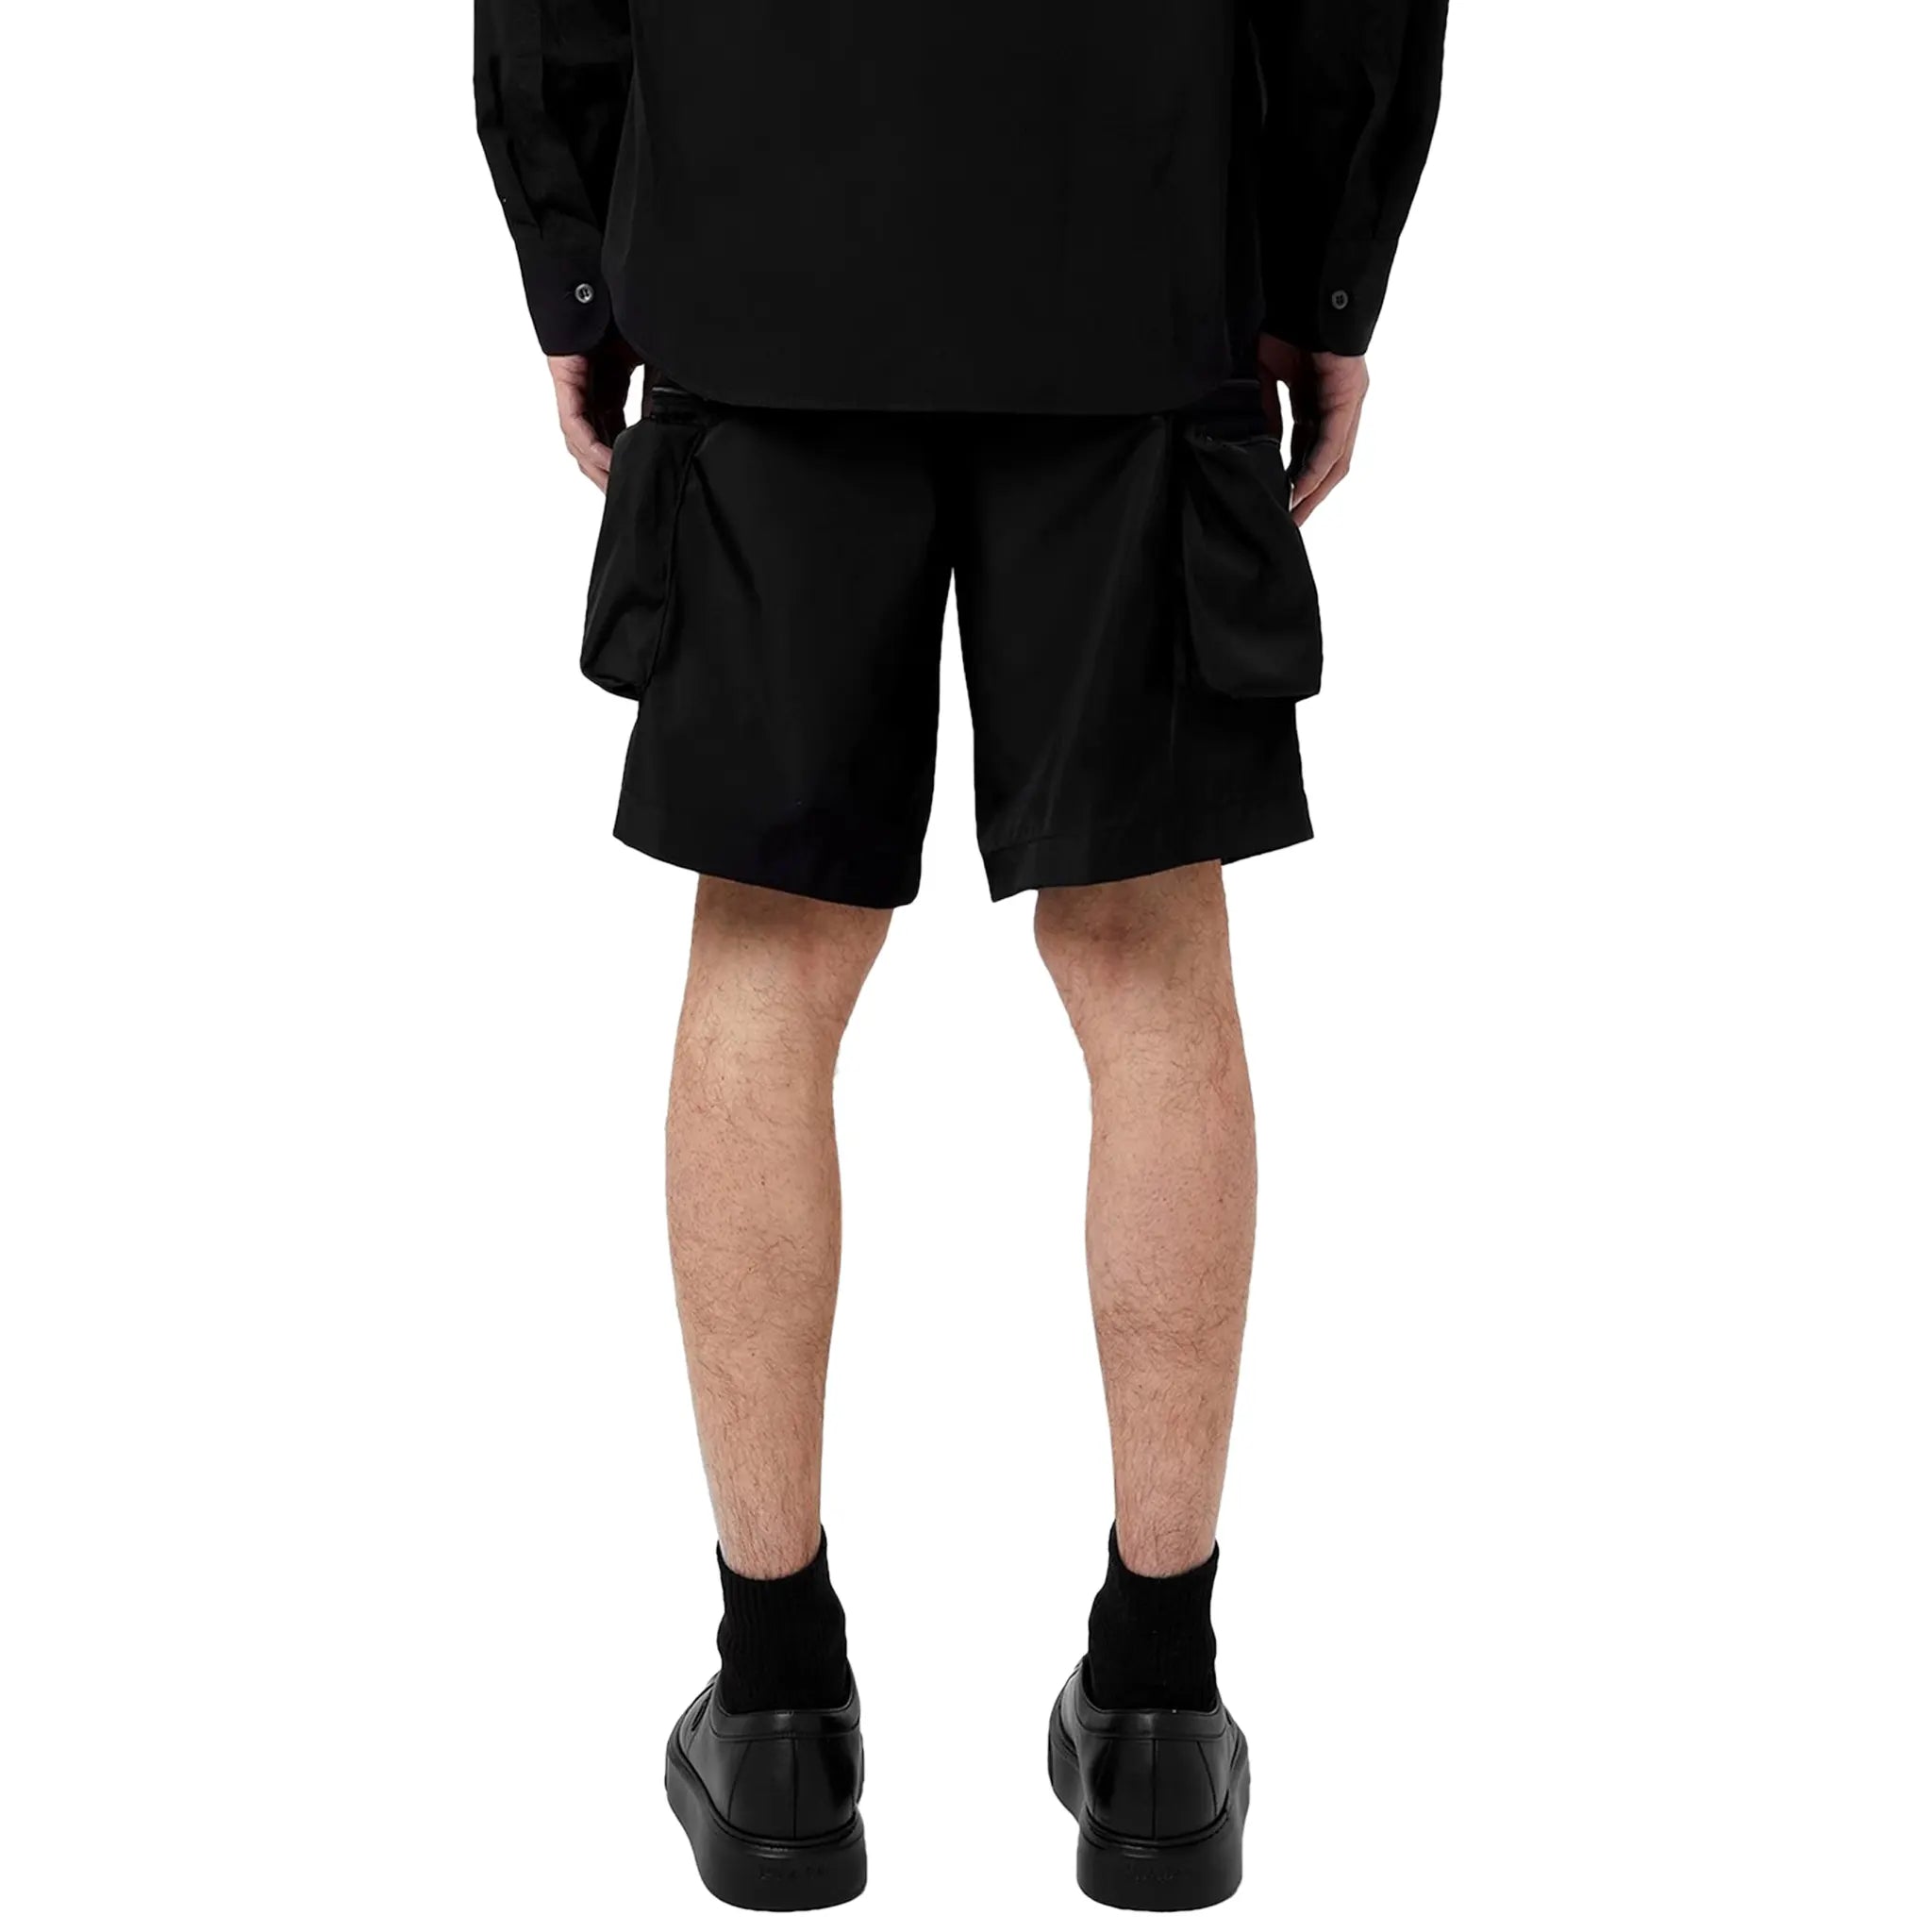 Back Detail view of Prada Bermudas Nylon Black Shorts SPH393_1WQ8_F0002_S_OOO